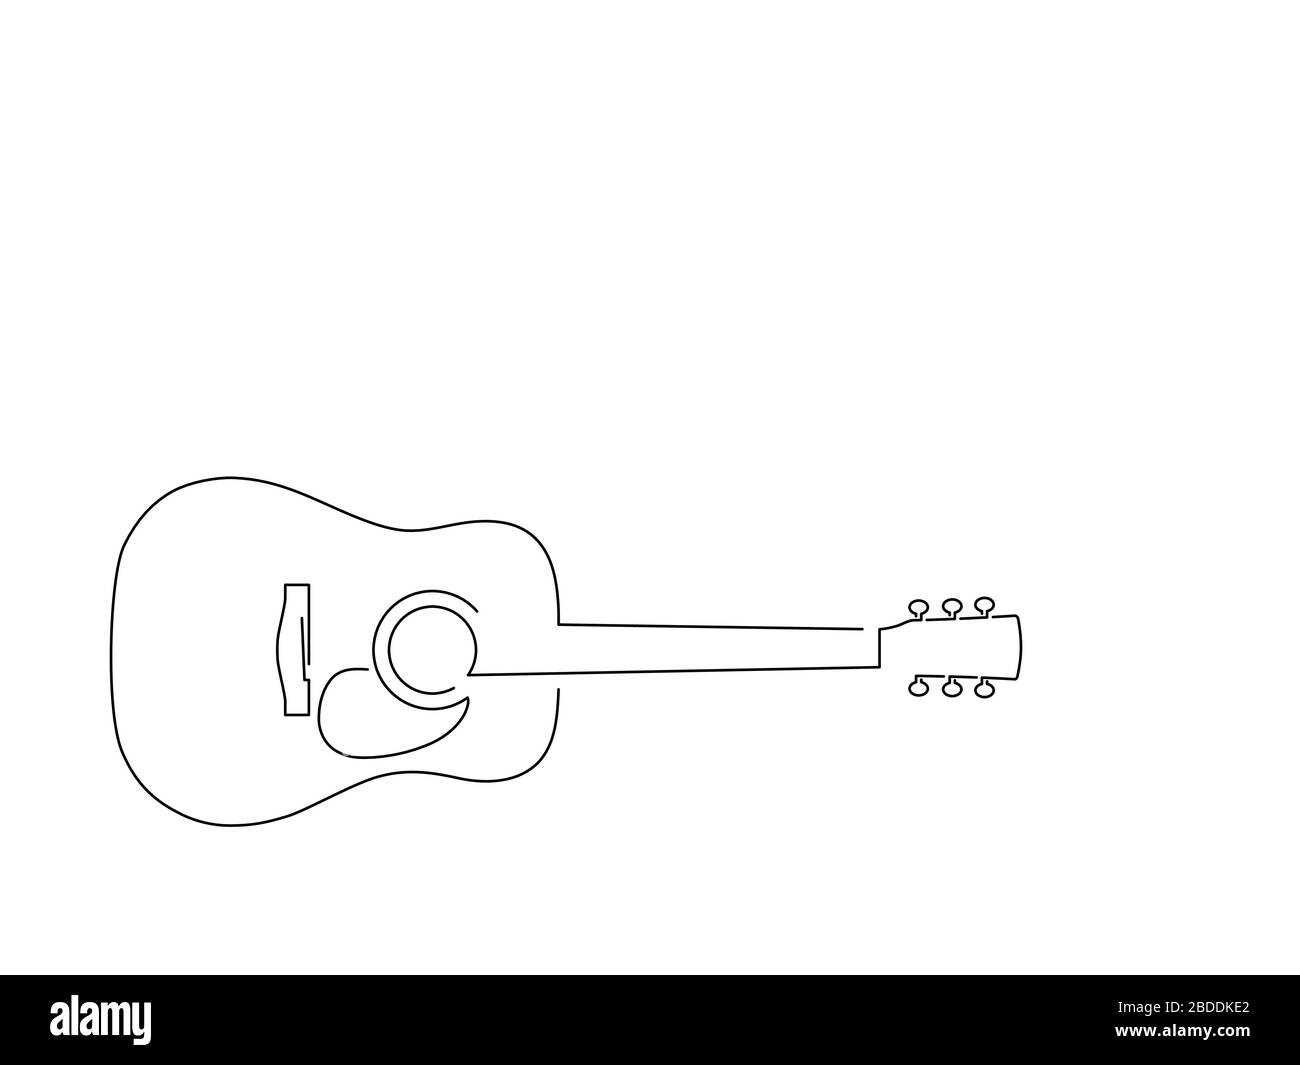 Dessin de ligne isolée de guitare, dessin d'illustration vectorielle Image  Vectorielle Stock - Alamy